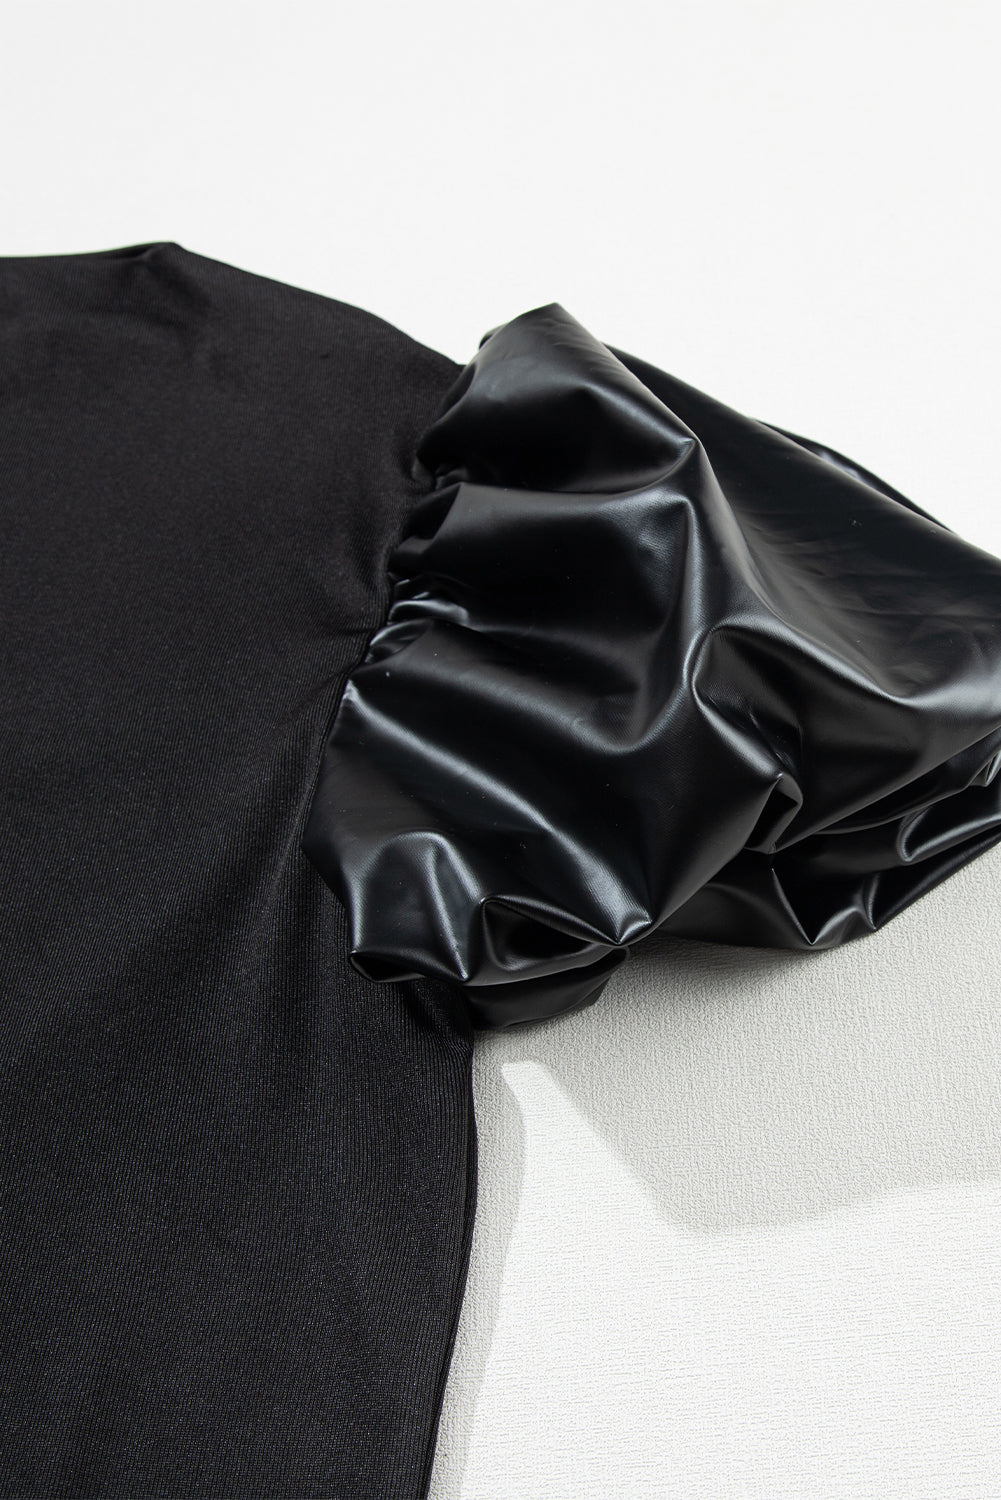 Crna majica s lažnim ovratnikom od puf kratke rukave od umjetne kože